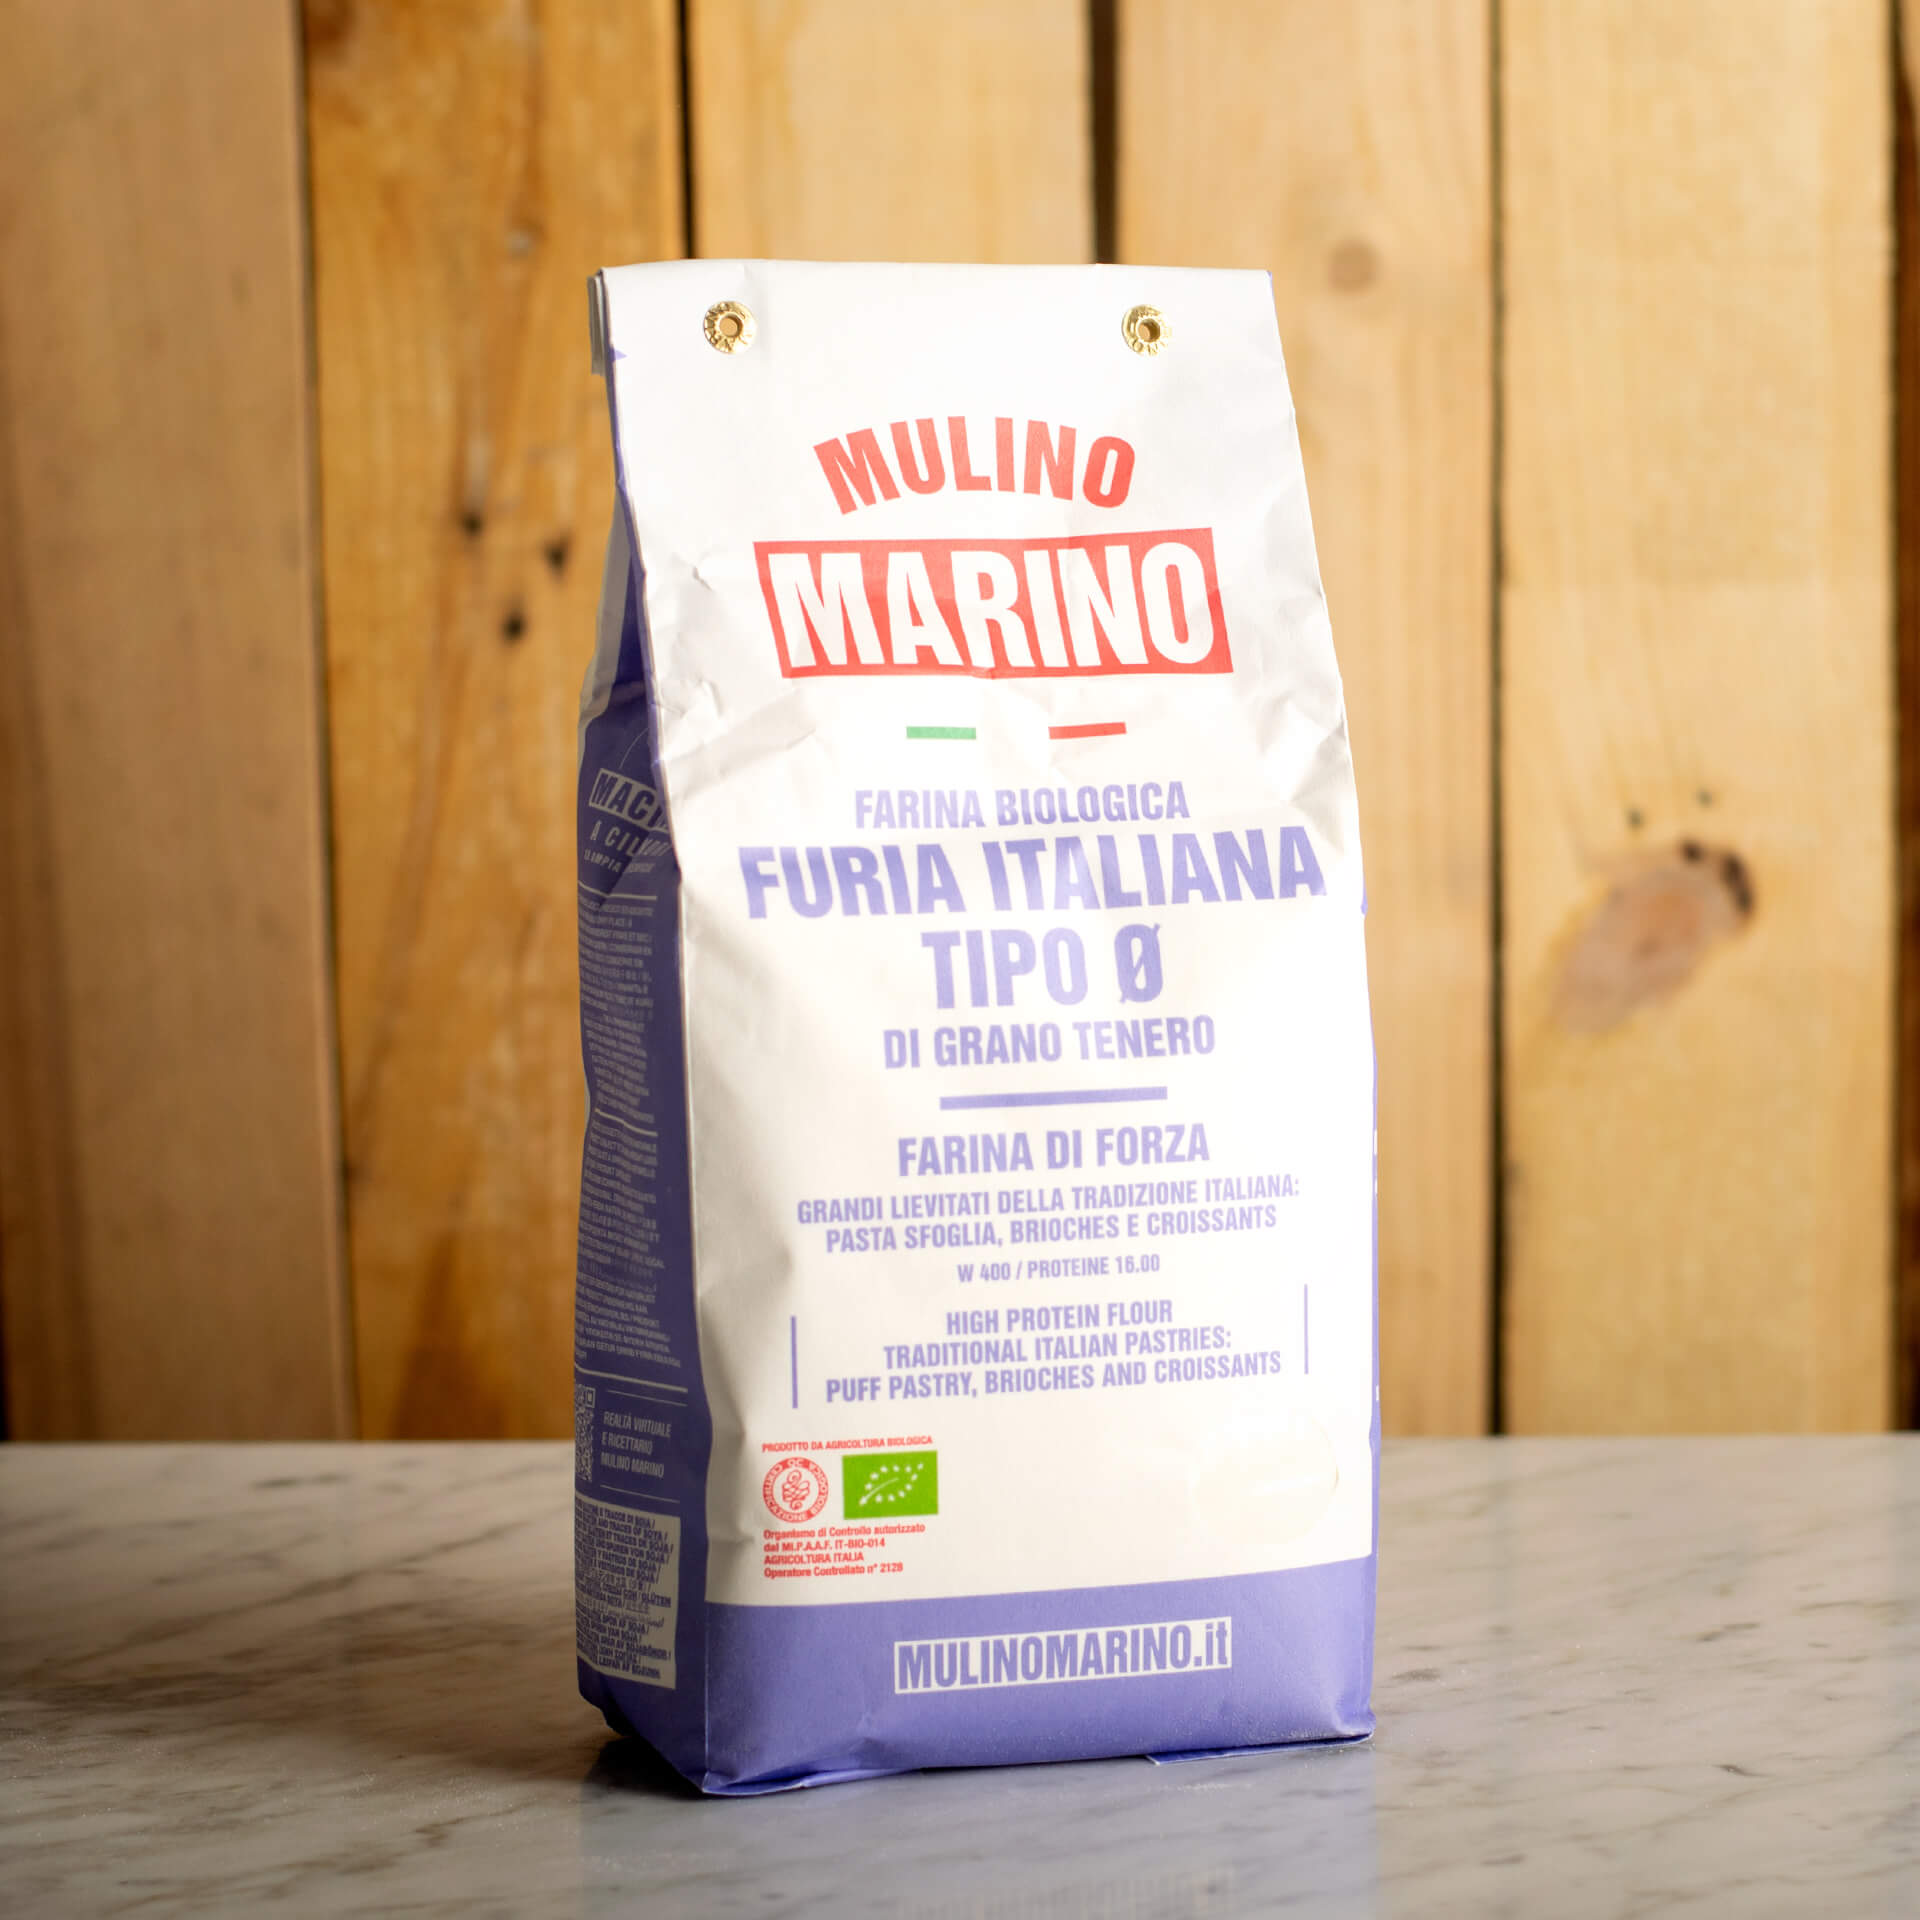 Organic "Furia Italiana" Flour 10kg